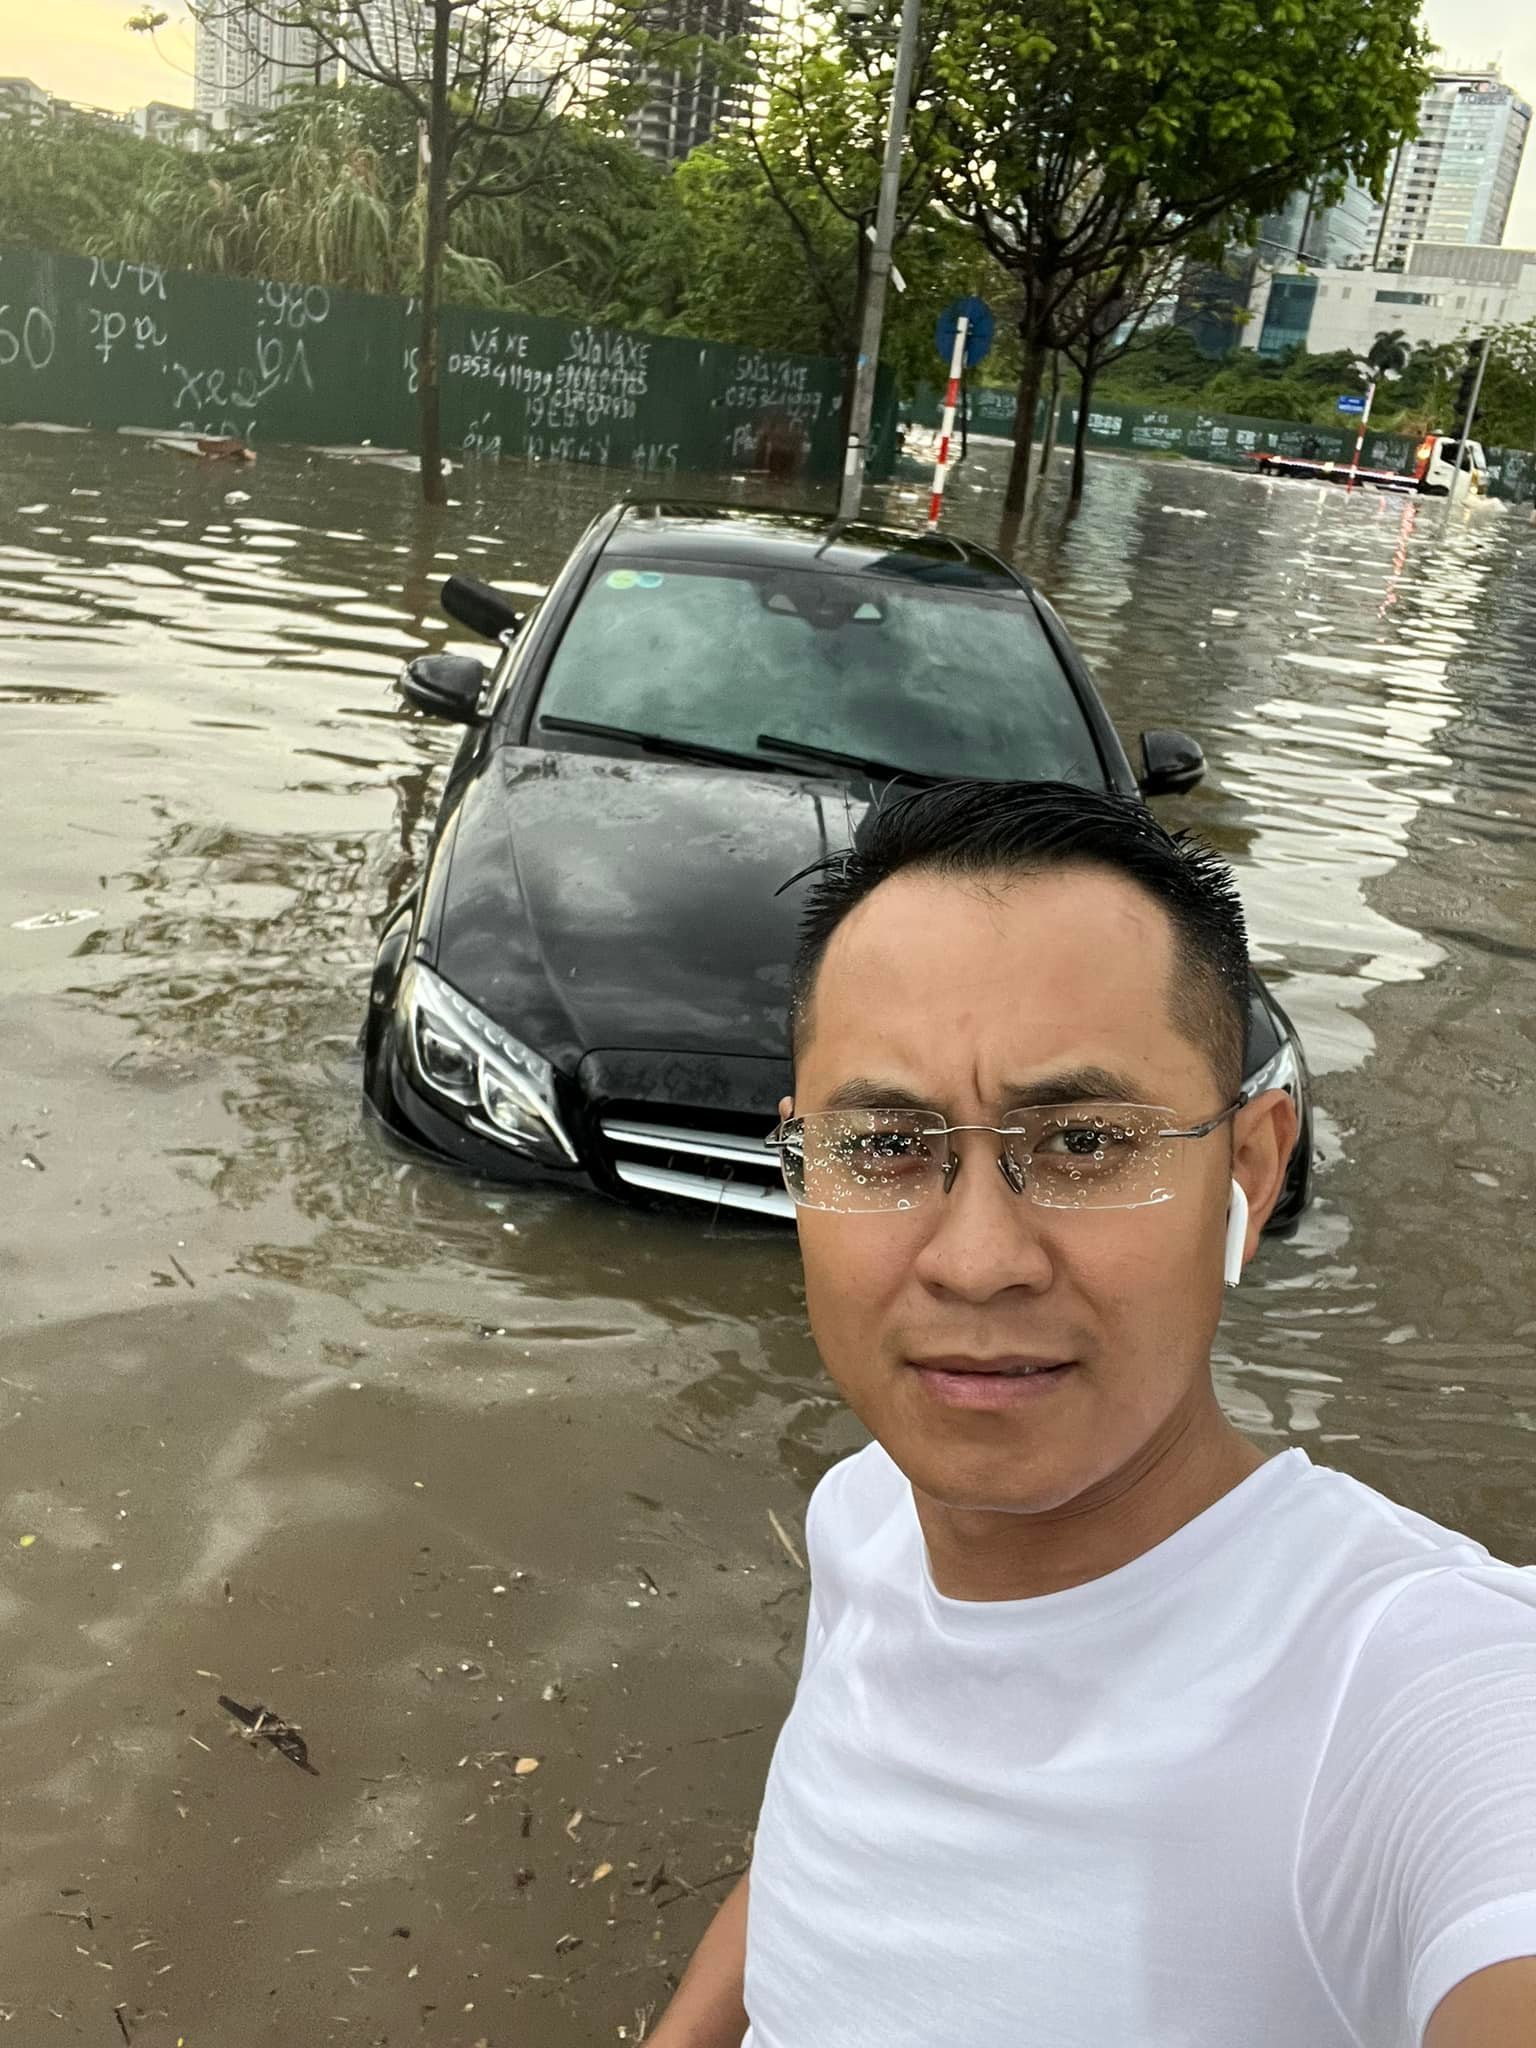 Người đàn ông đi xe Mẹc ‘sáng nhất’ MXH sau mưa ngập Hà Nội: Tôi chỉ 'câu giờ', xem như 1 kỷ niệm đáng nhớ!